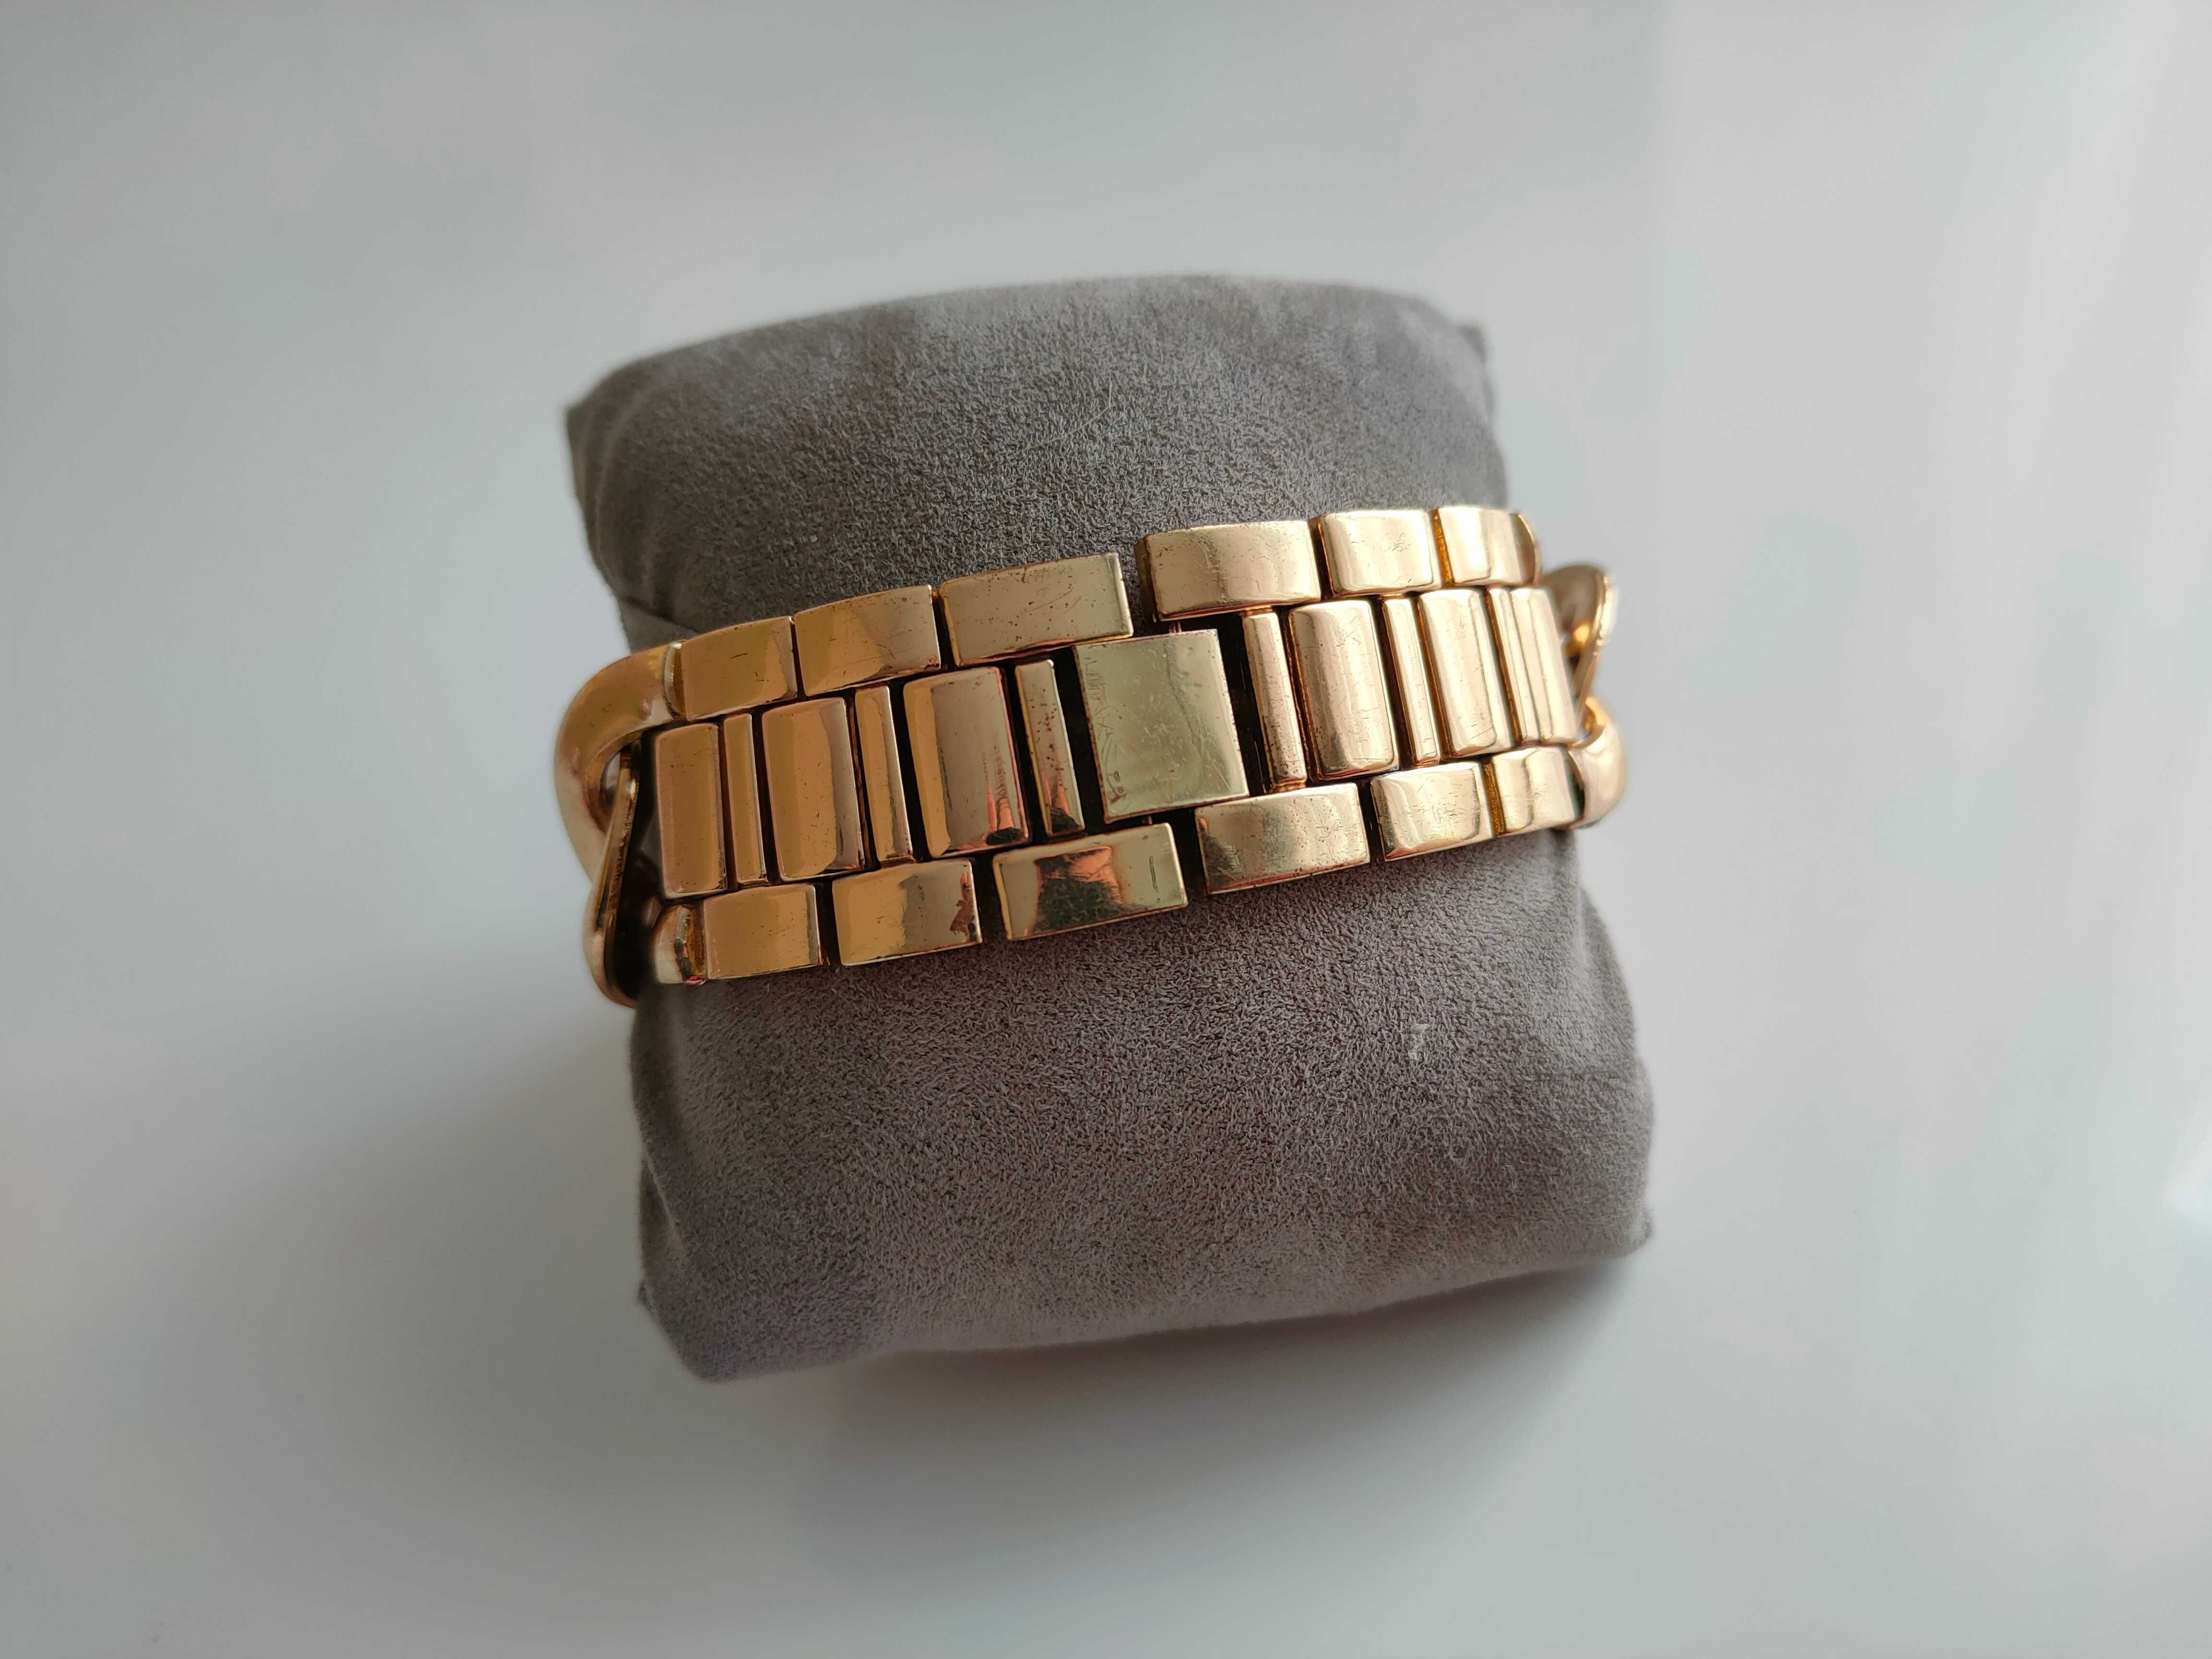 Стильные женские наручные часы Michael Kors с браслетом.цвет-золото.